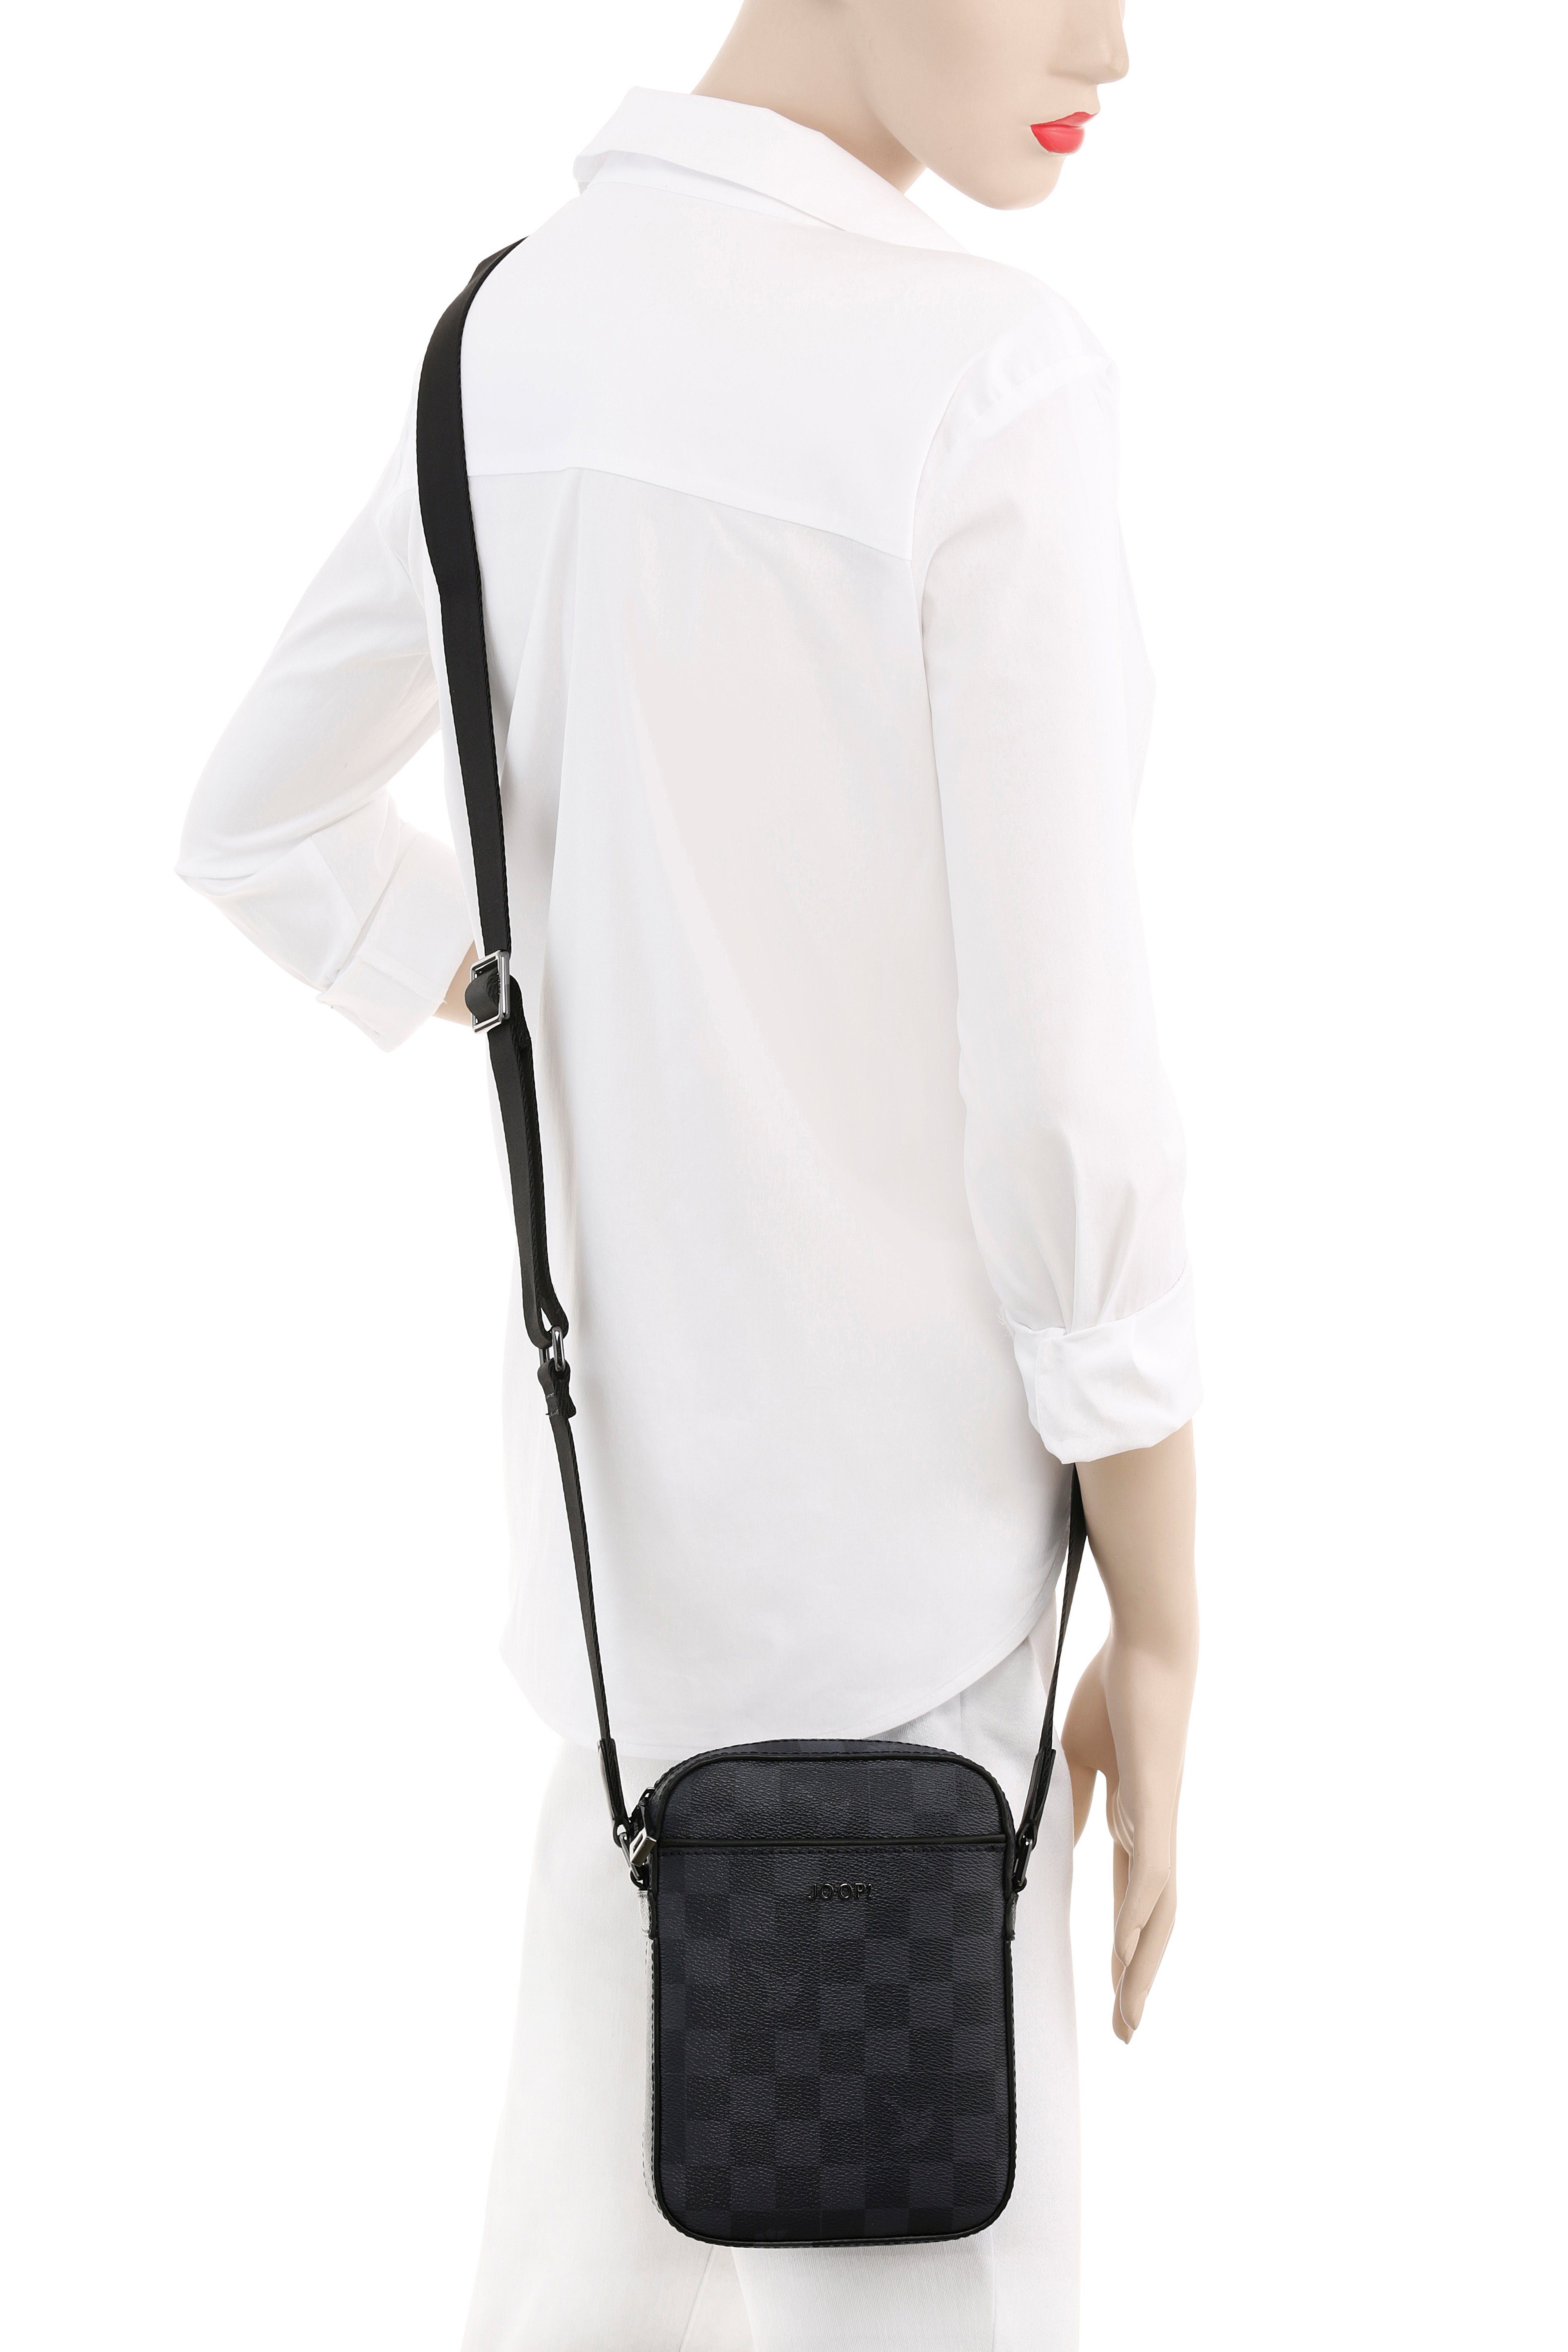 Joop! Umhängetasche cortina piazza rafael Handy shoulderbag Format, fürs xsvz, im dunkelblau praktischem perfekt